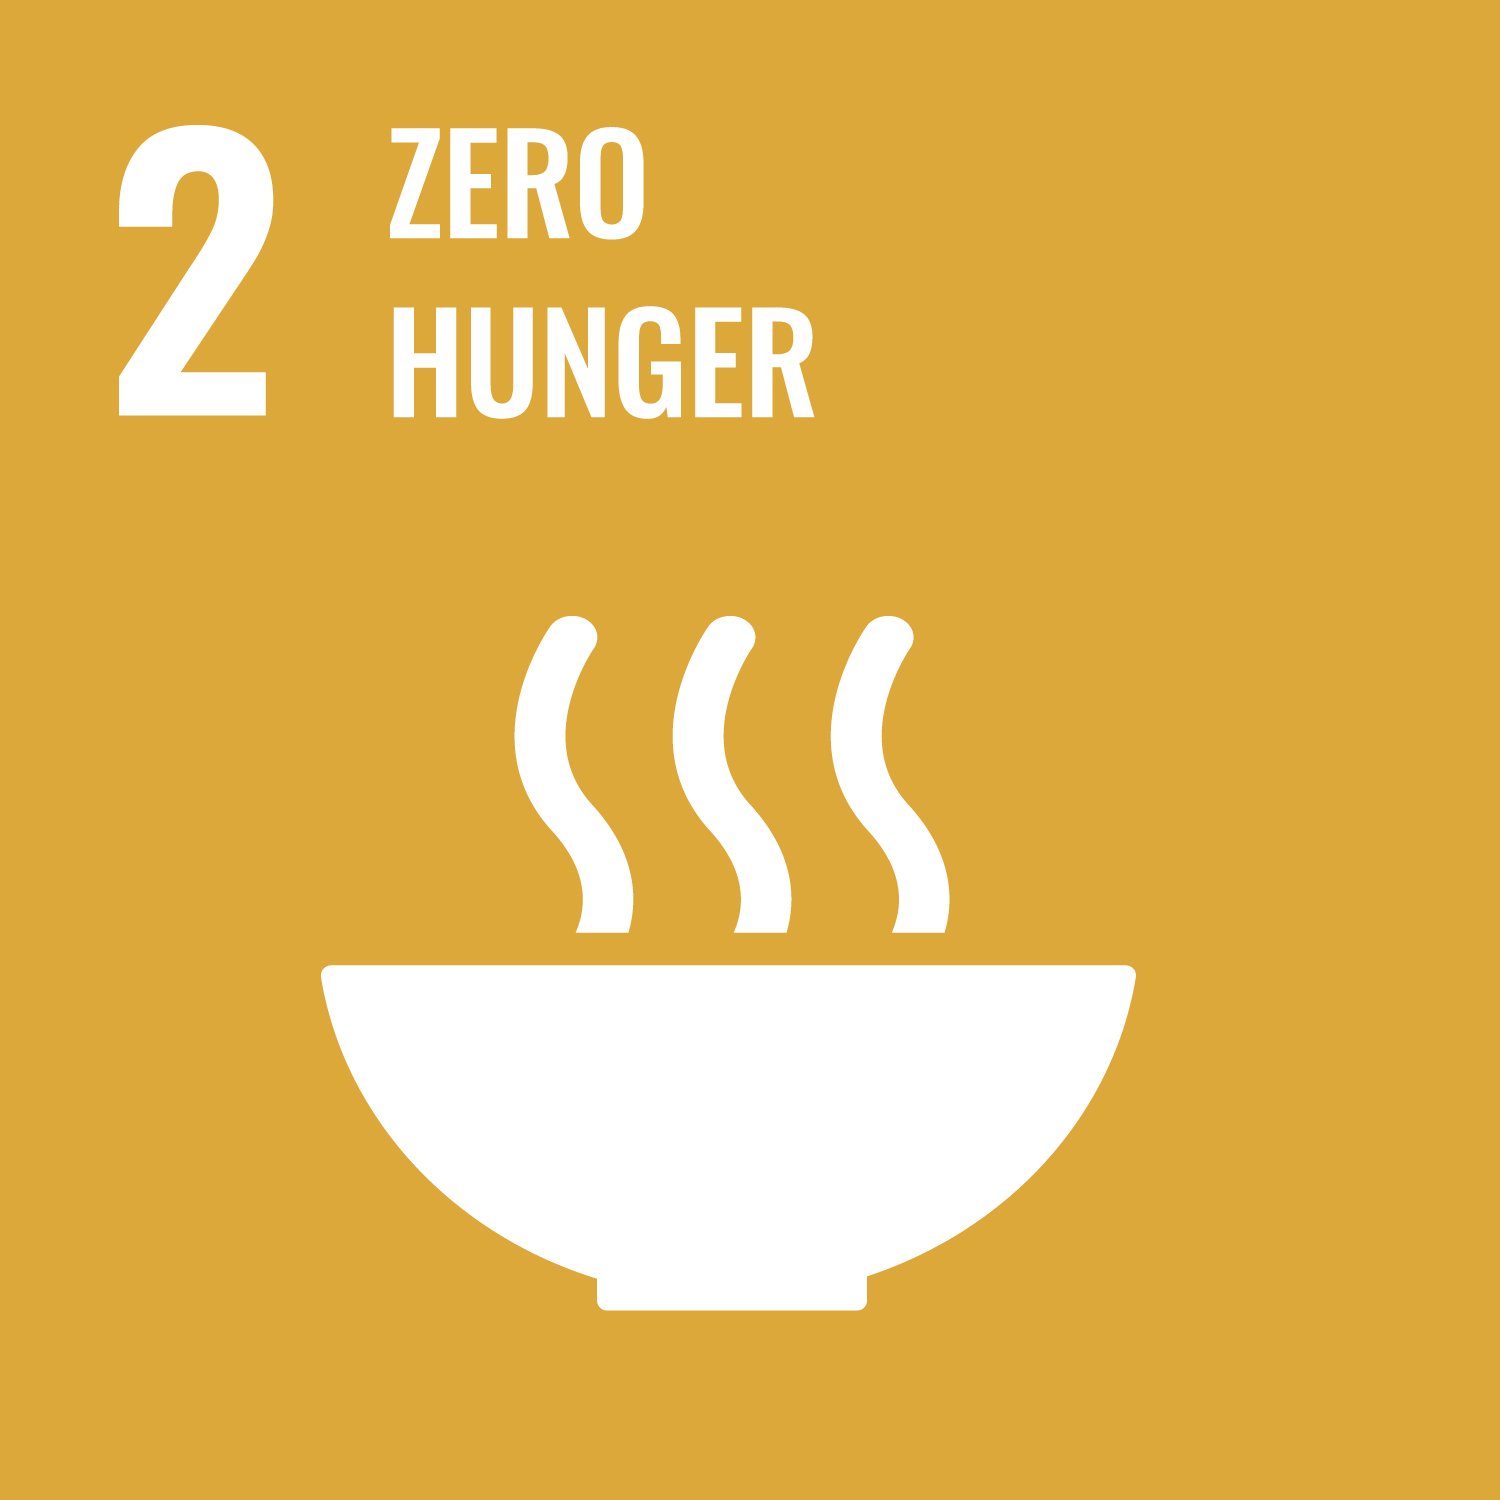 SDG Goal 2: Zero Hunger